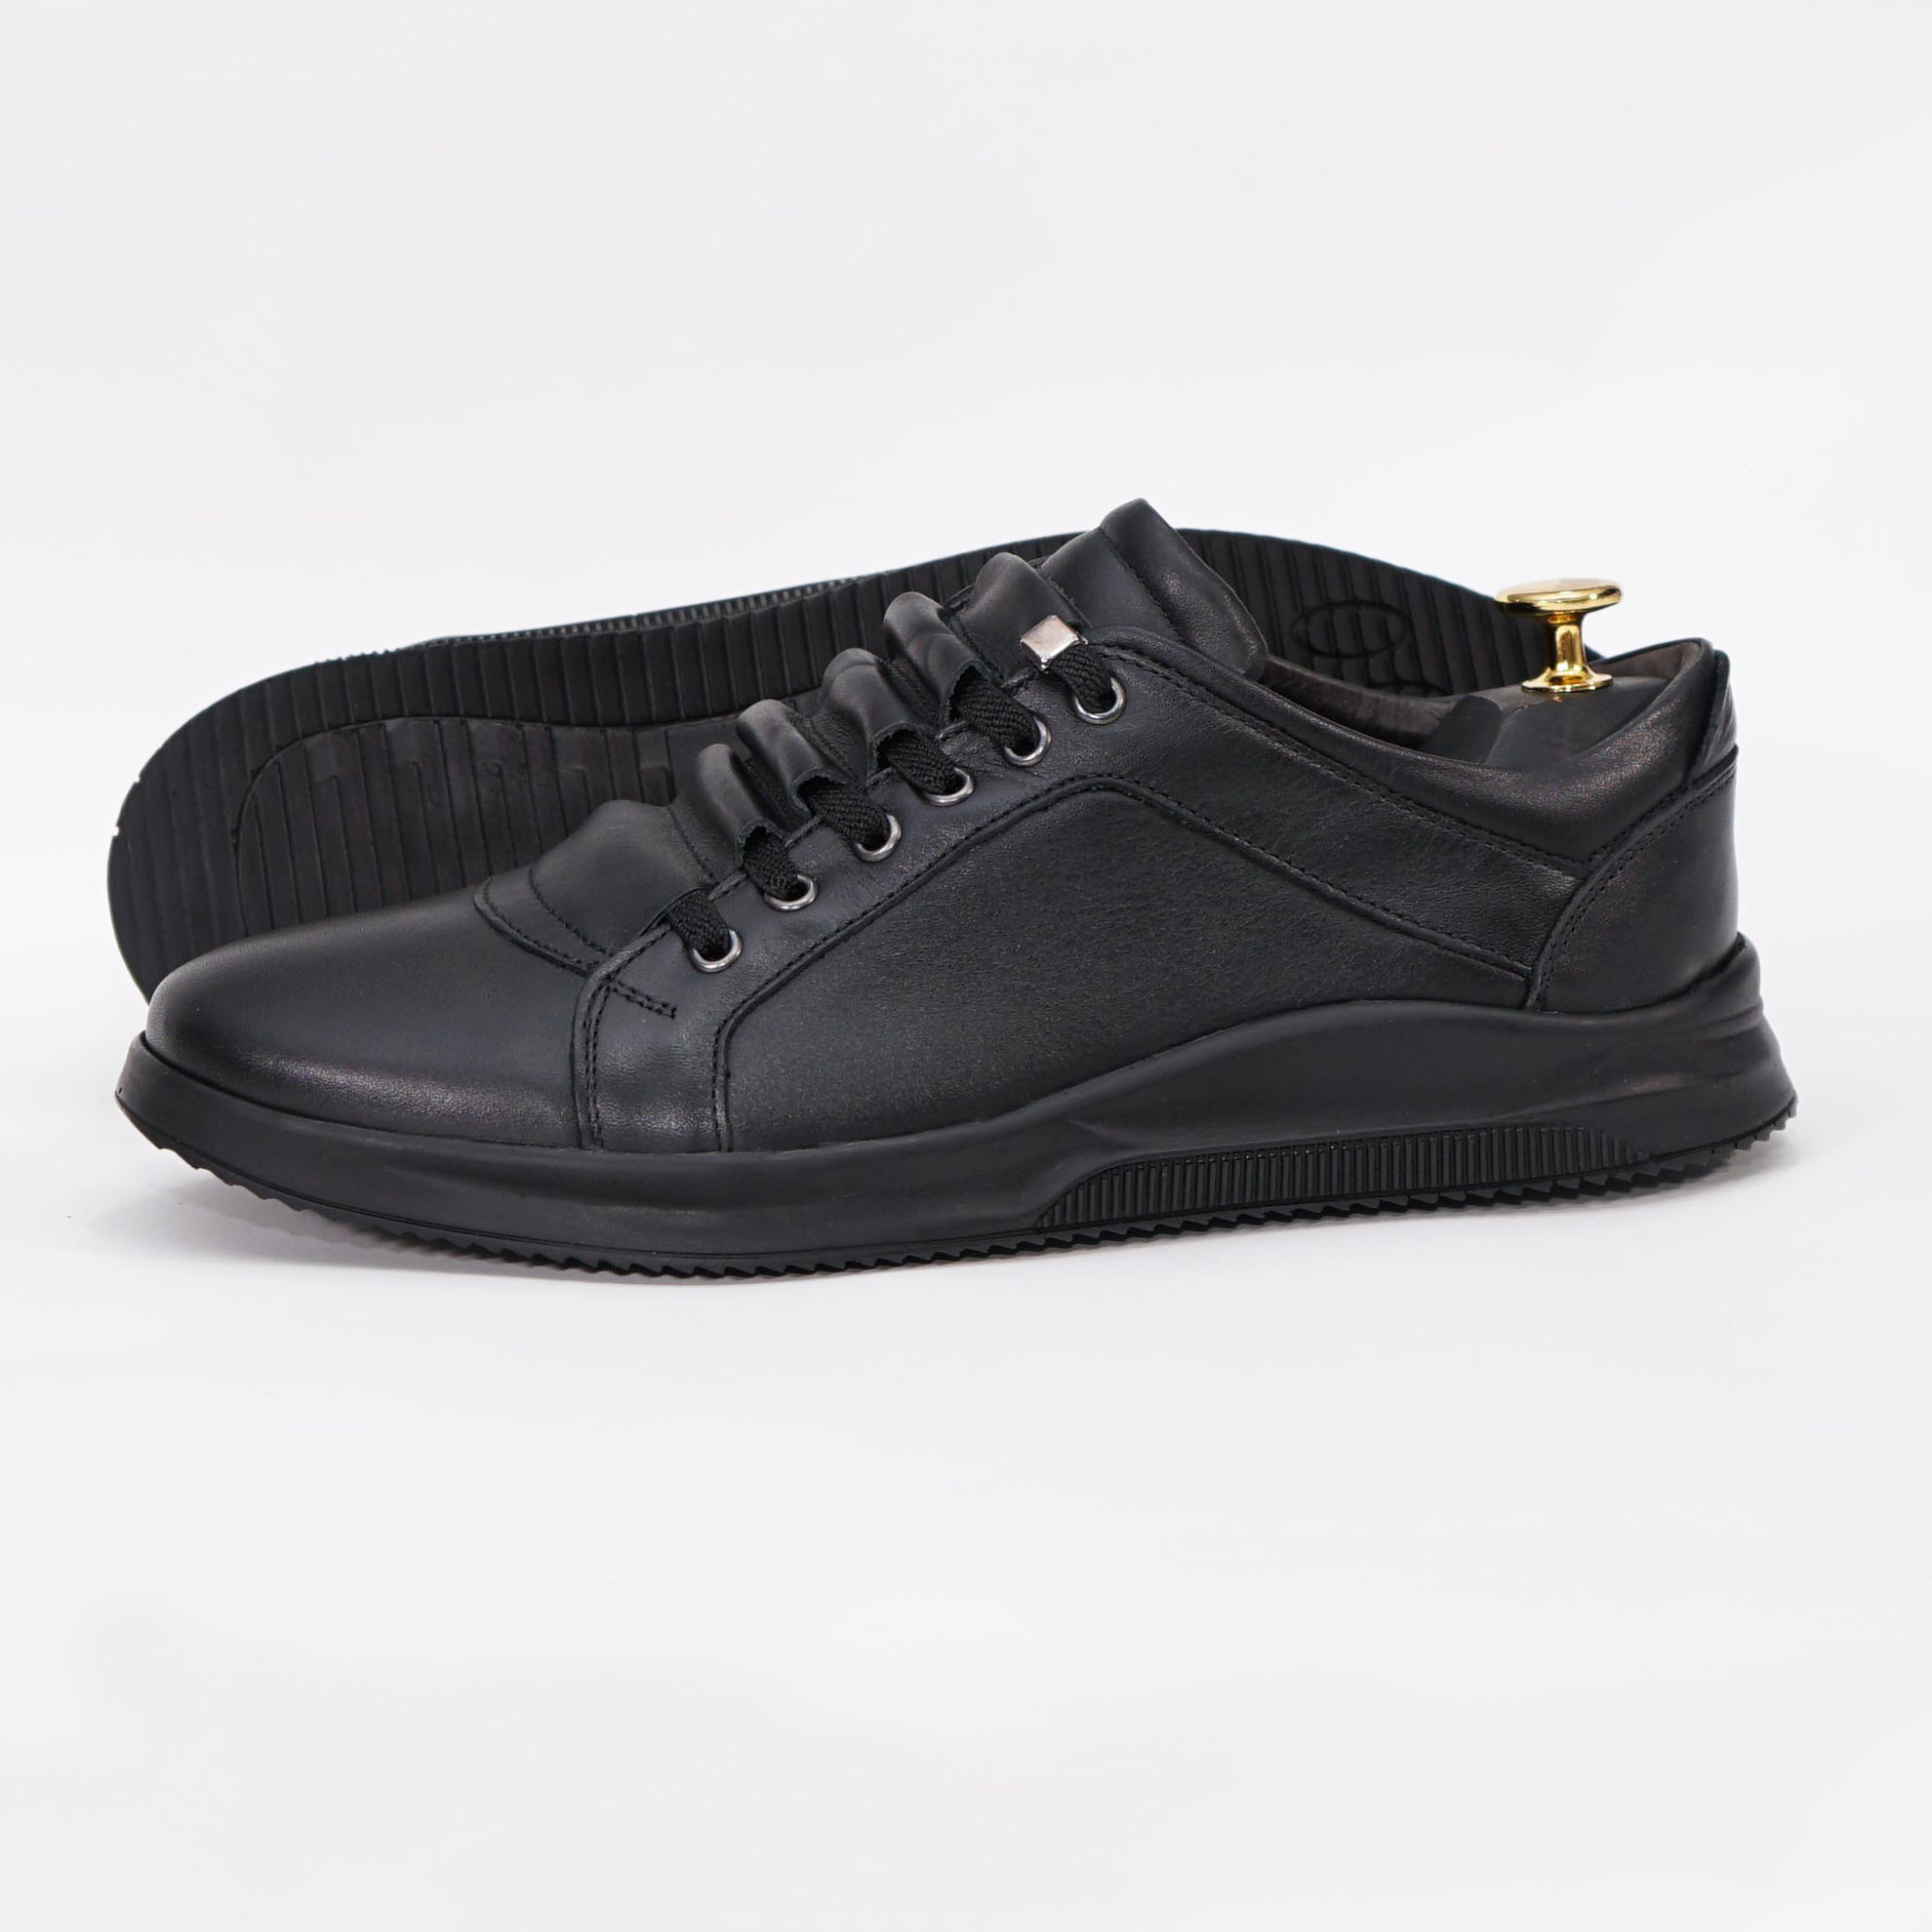 Frontier regulate Preference Demalis | Magazin Online încălțăminte din piele naturală. pantofi-sport -bărbați-piele-naturală-433-negru-talpa-pu